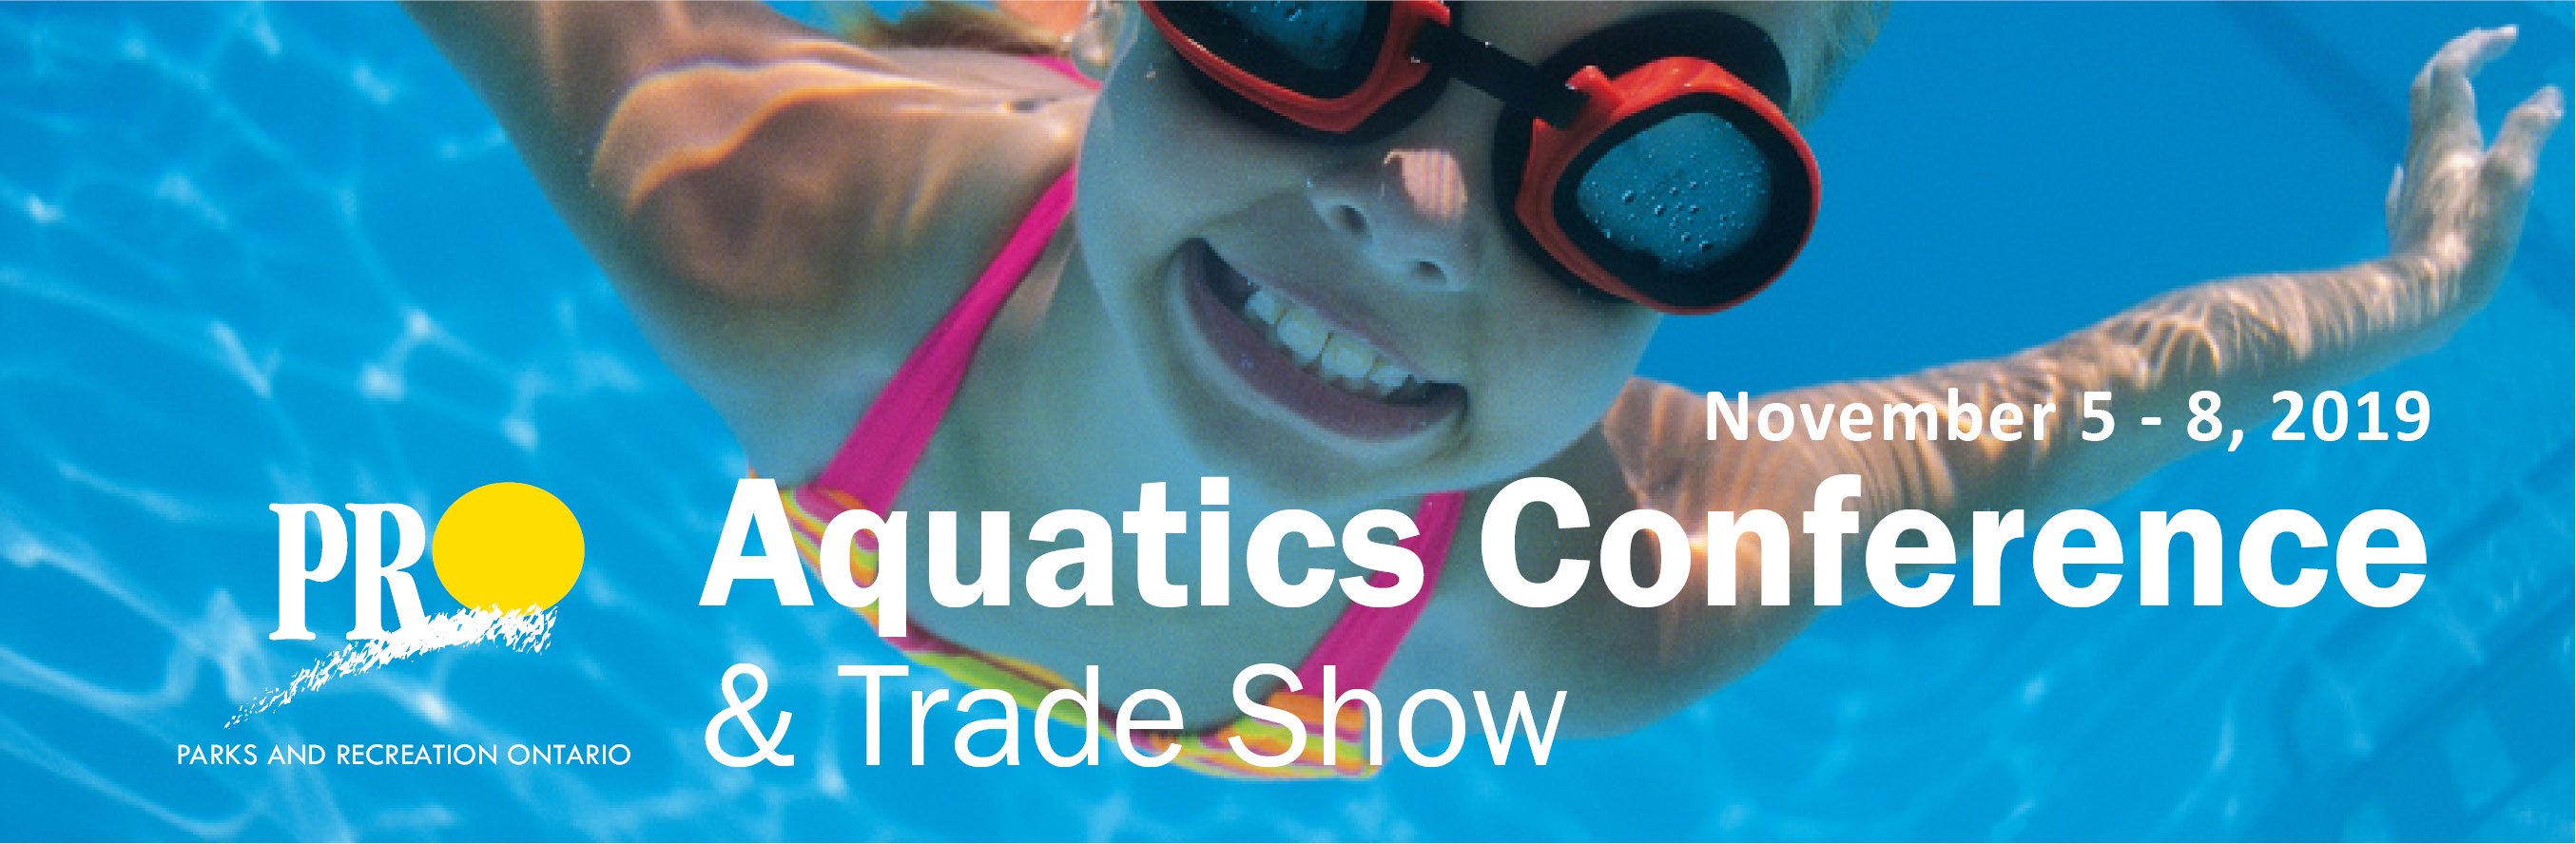 PRO Aquatics Conference